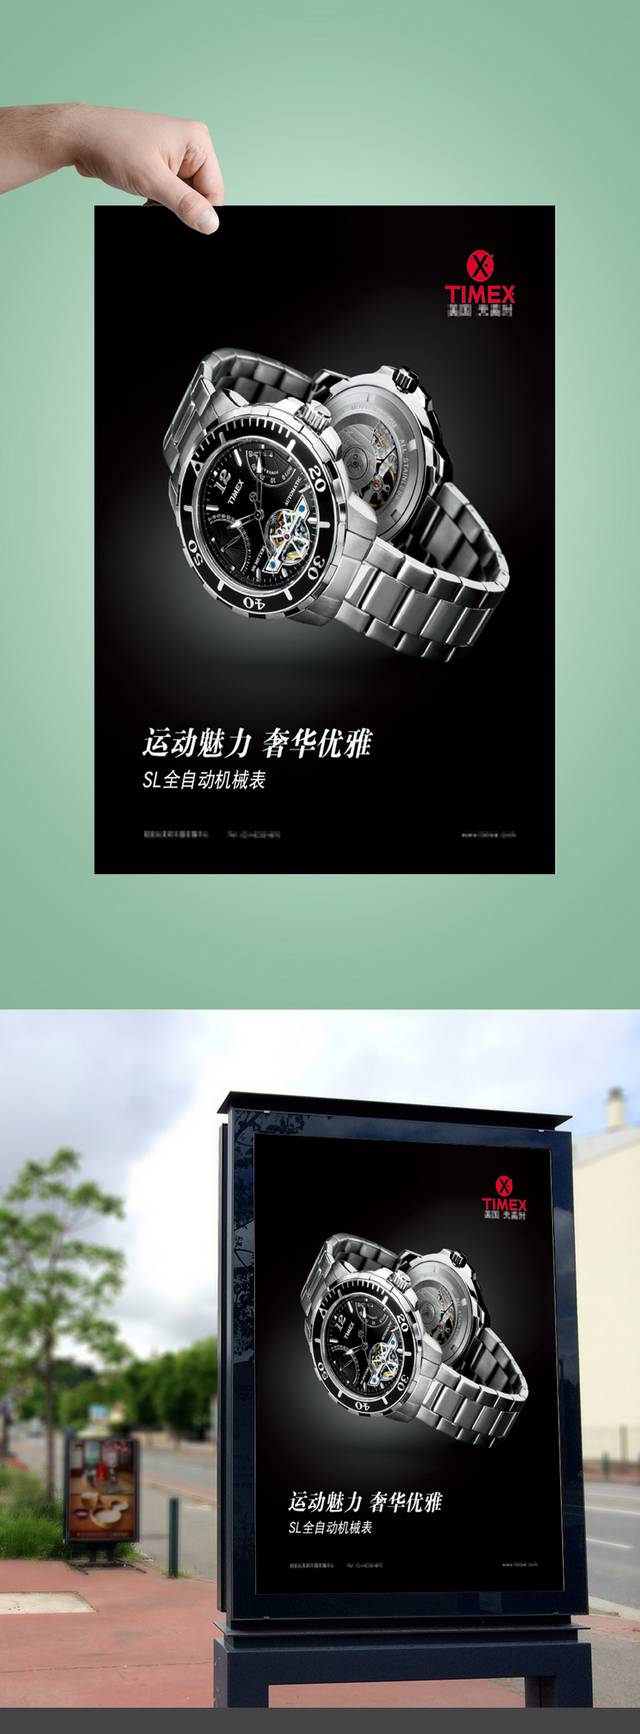 黑色简约手表海报设计